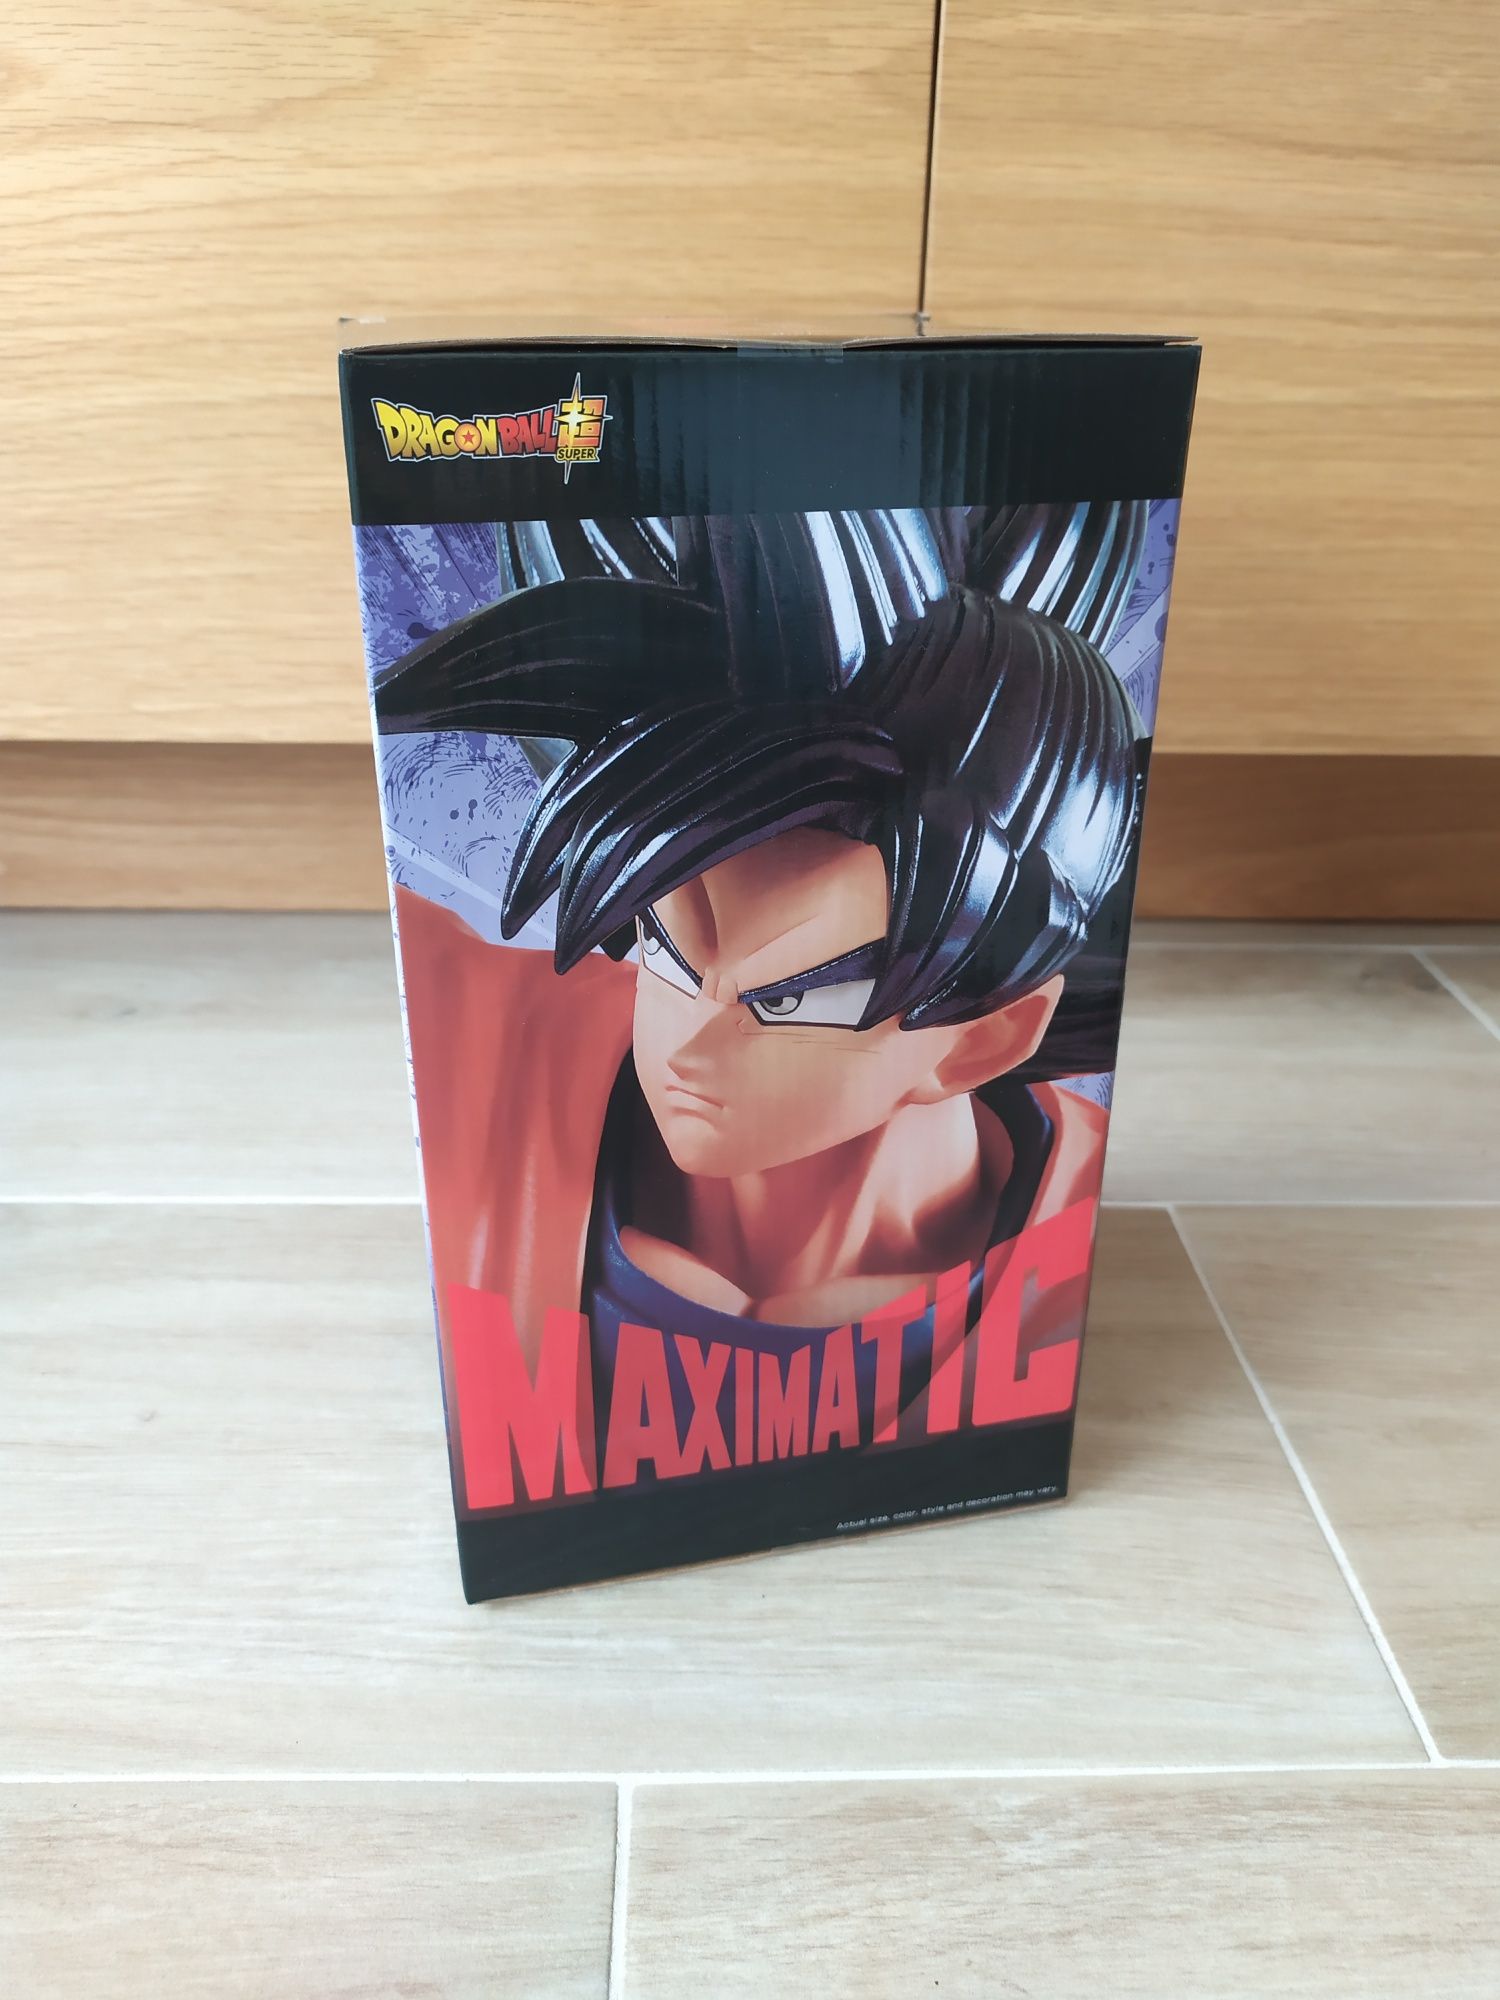 The Son Goku VI Maximatic (Novo e Selado)